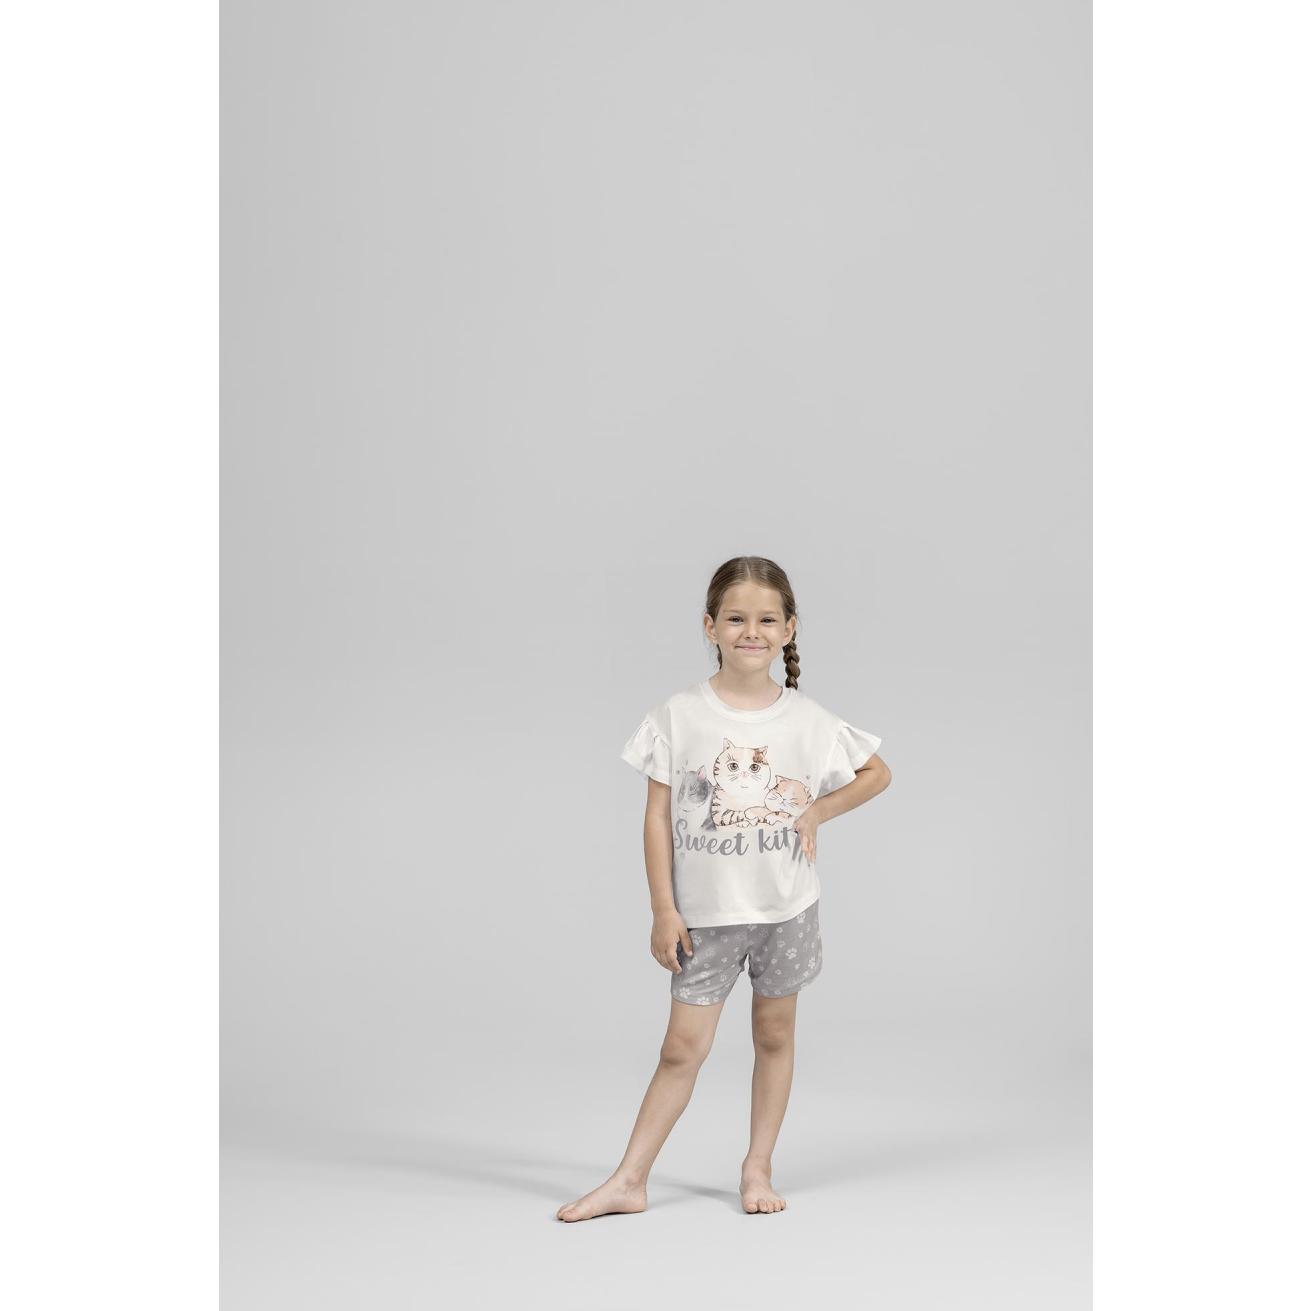 Пижама для девочек Kids by togas Китти бело-серая 128-134 см, цвет белый, размер 128-134 см - фото 4